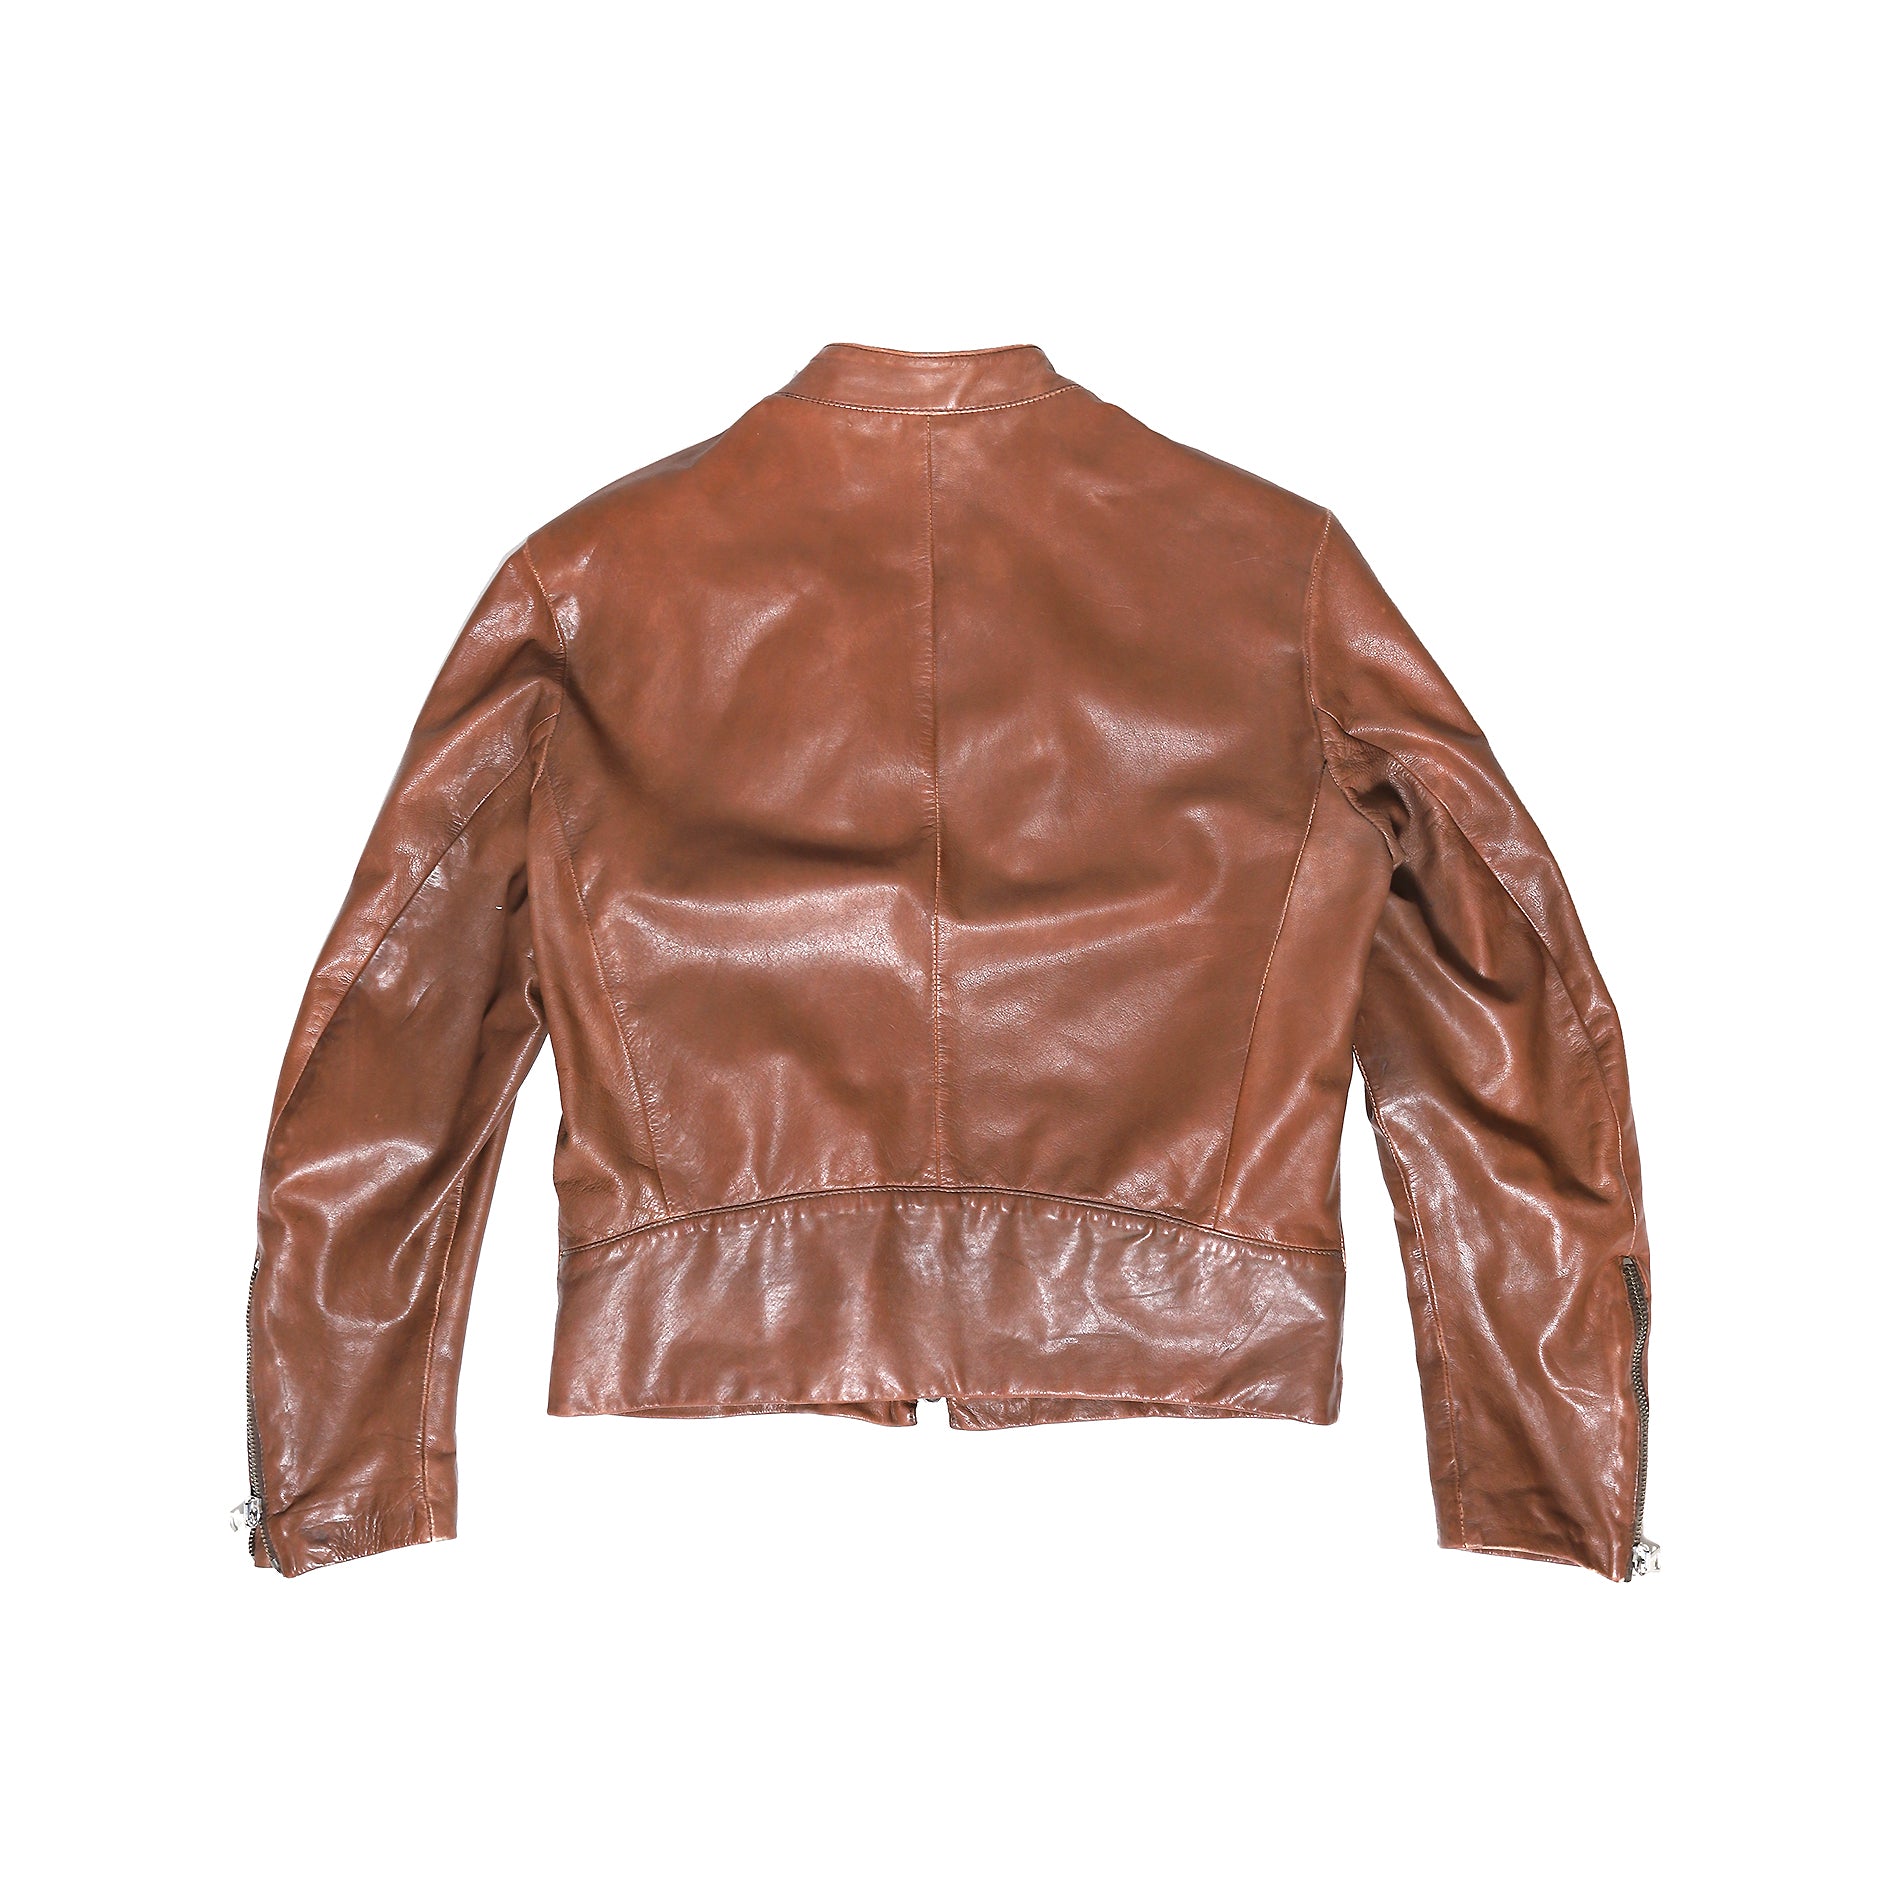 Maison Martin Margiela AW04 5 Zip Leather Jacket